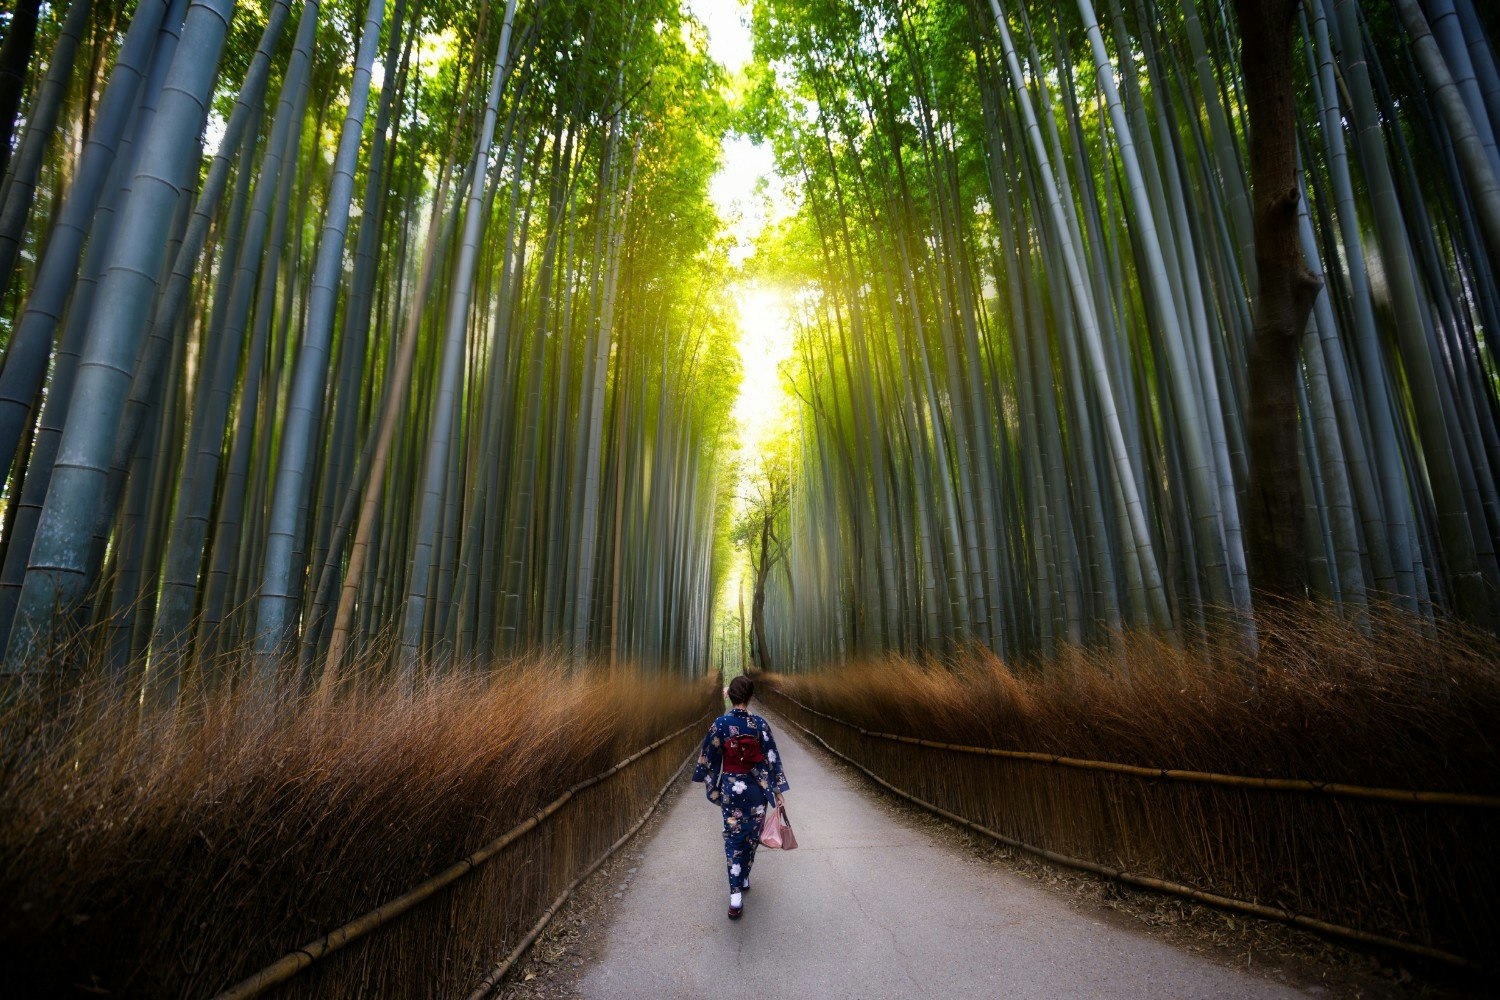 A person walking through the bamboo groves of Arashiyama, Kyoto, Japan